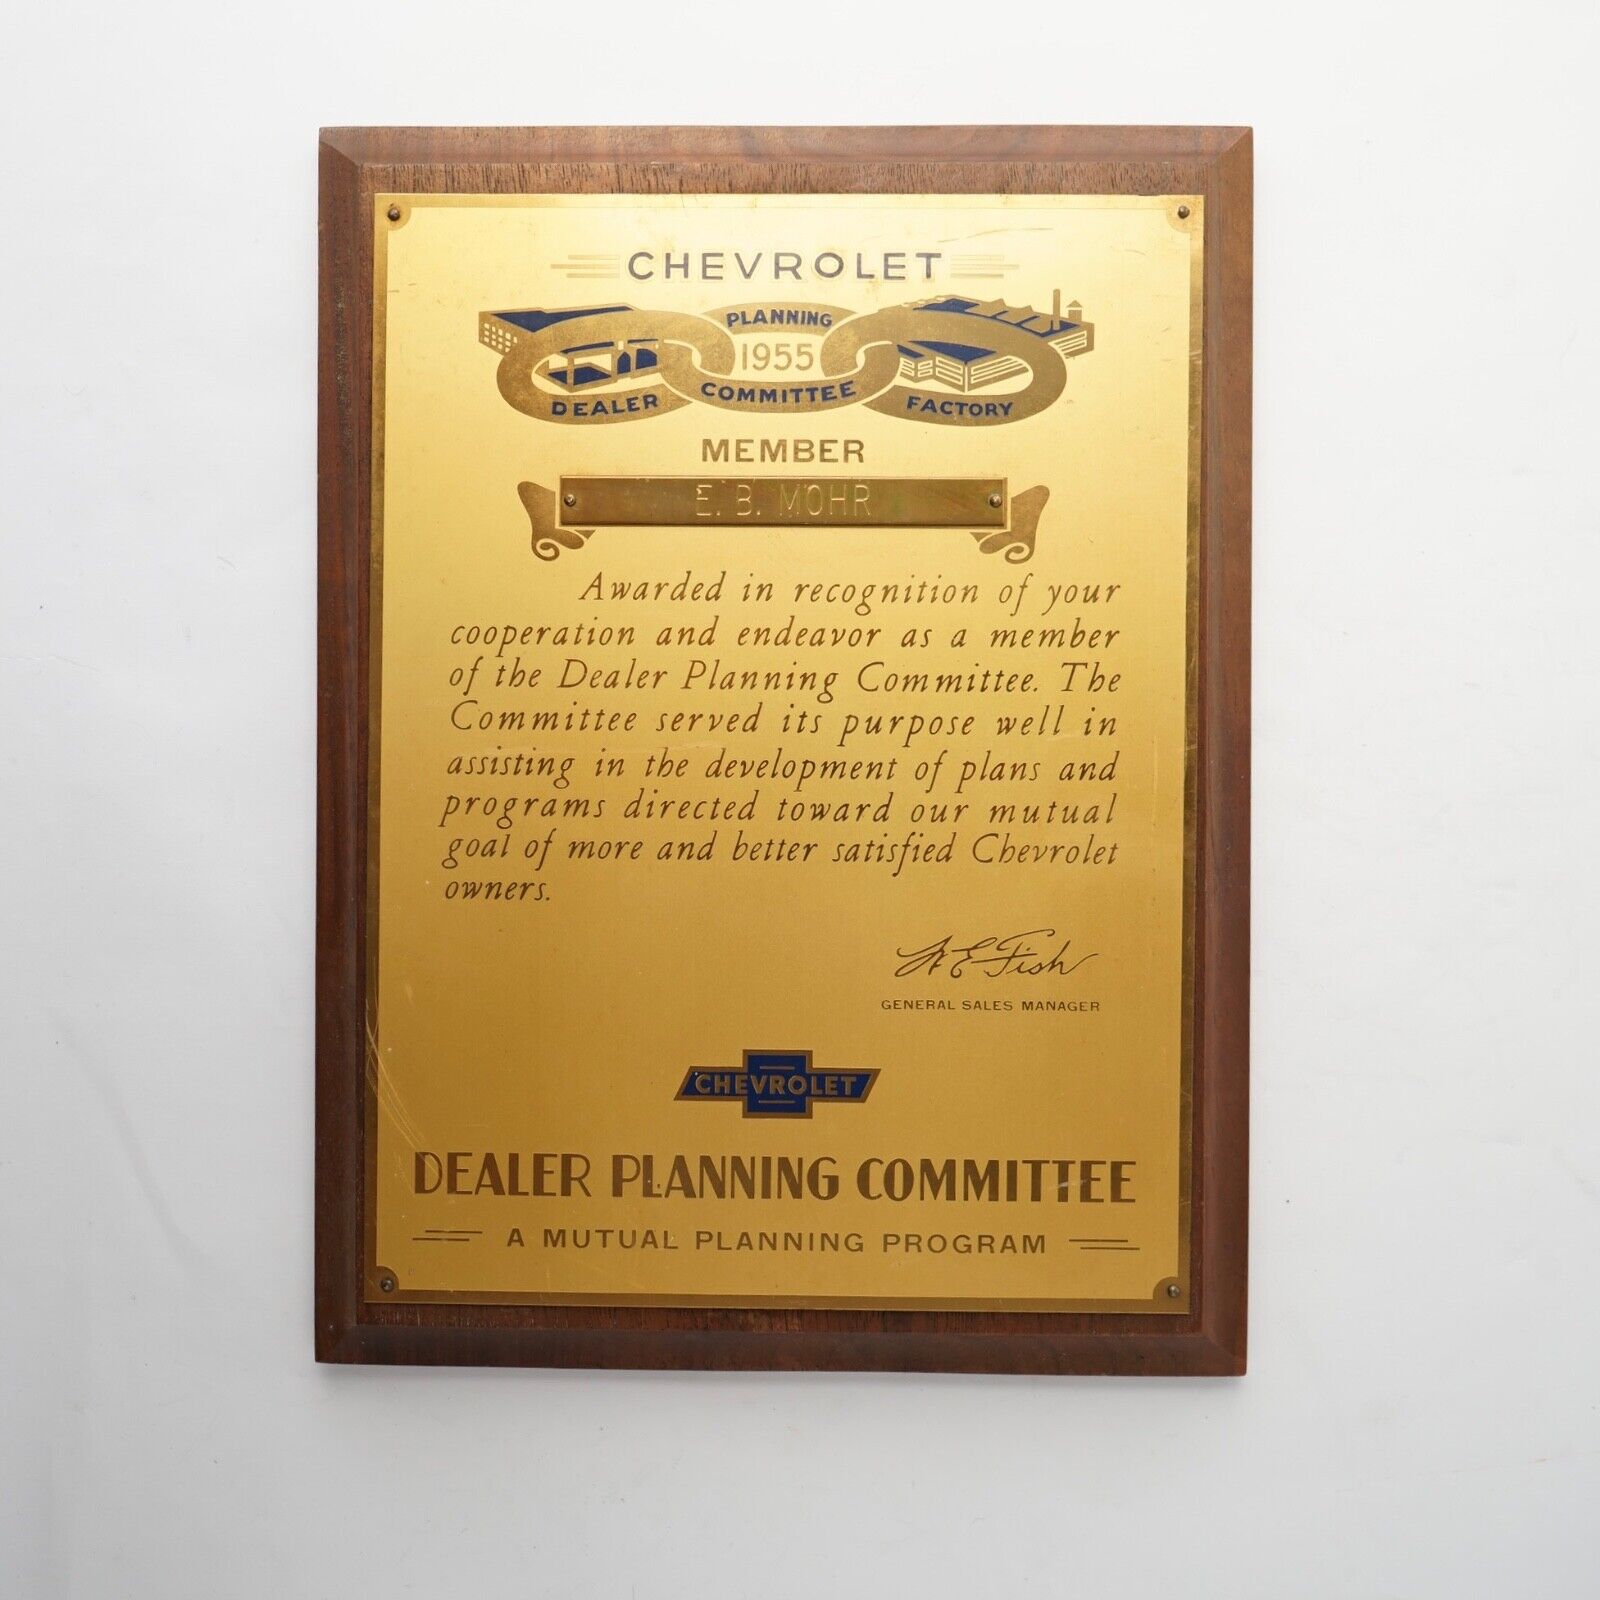 1955 Chevrolet Dealer Planning Committee Factory Member Award Plaque E.B. MOHR